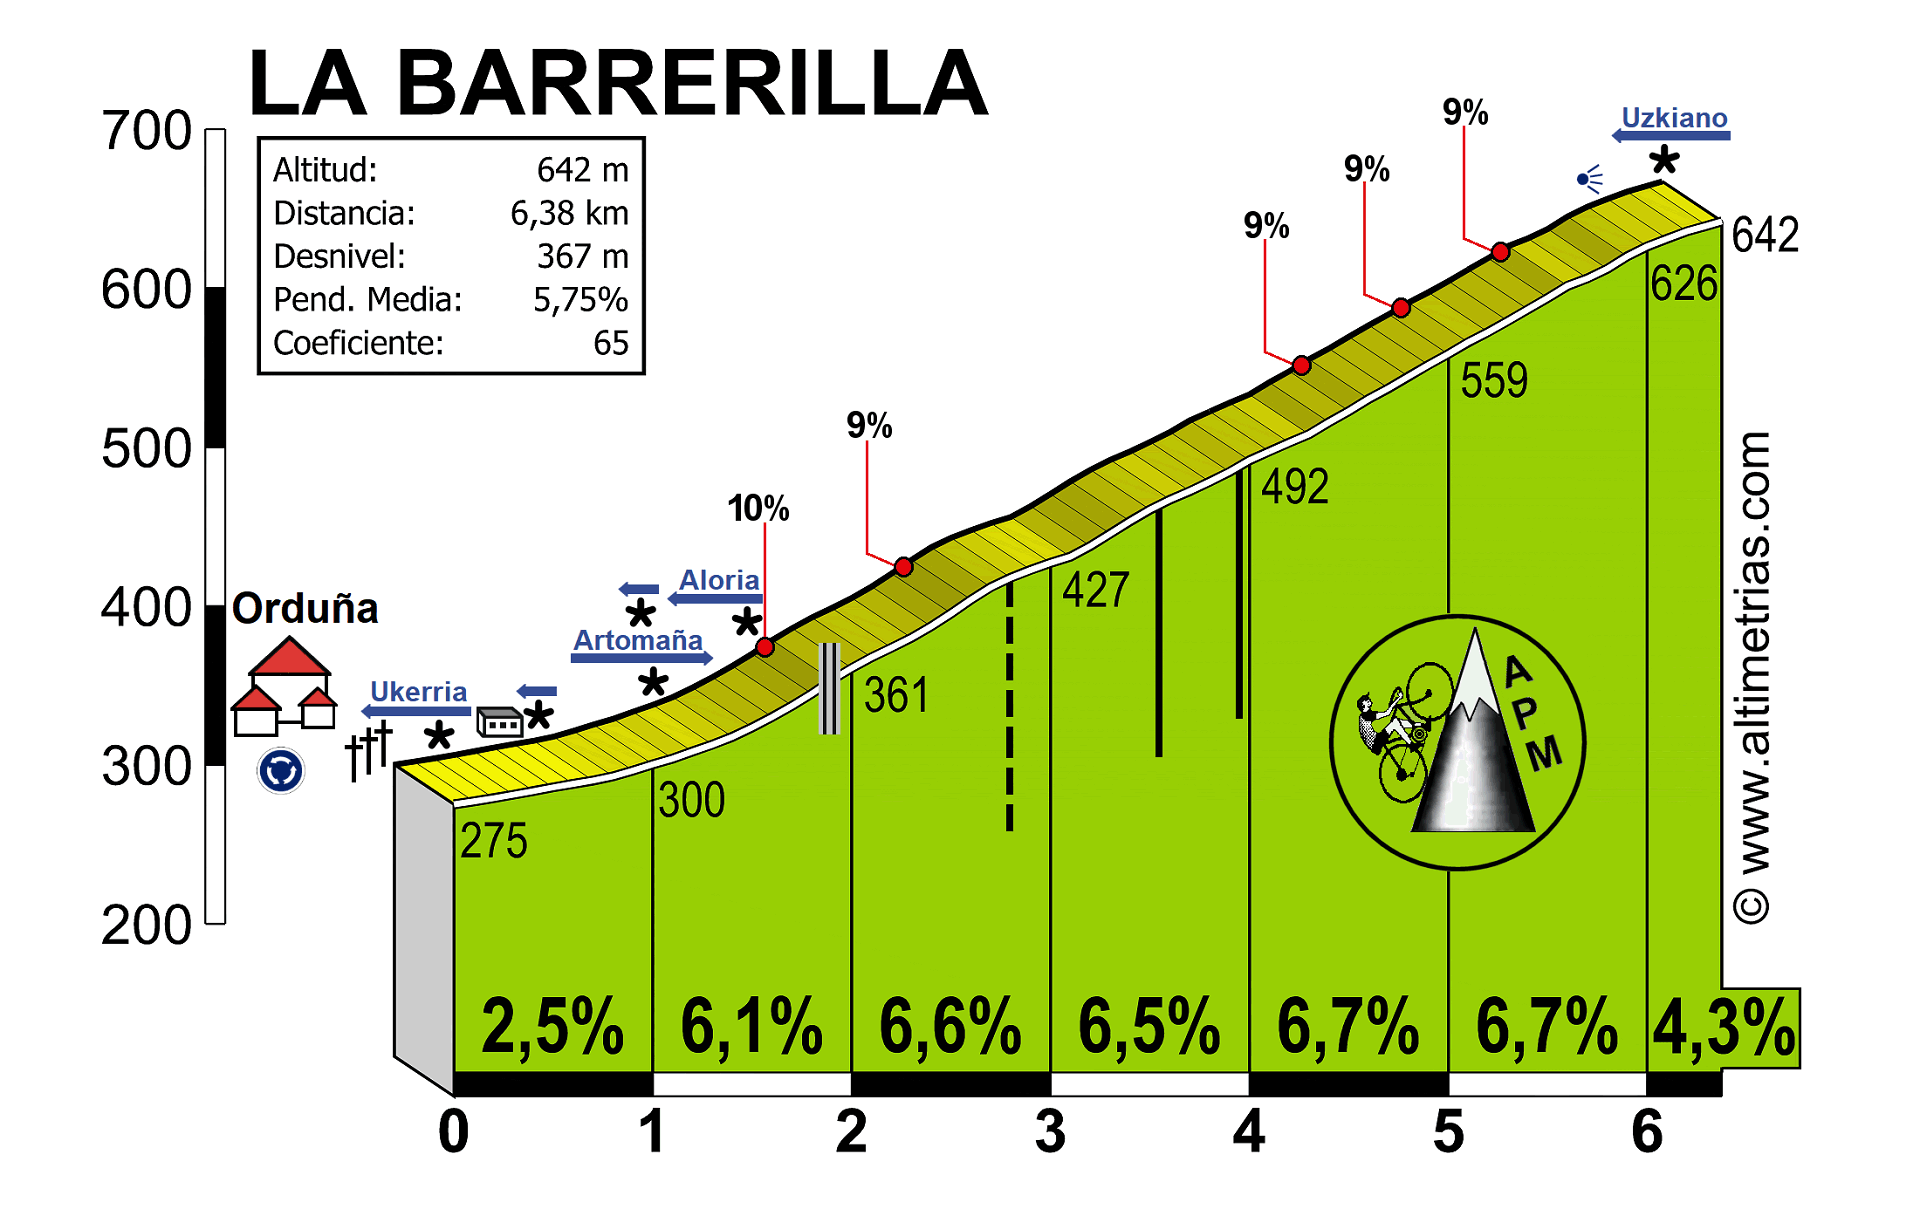 Barrerilla, La